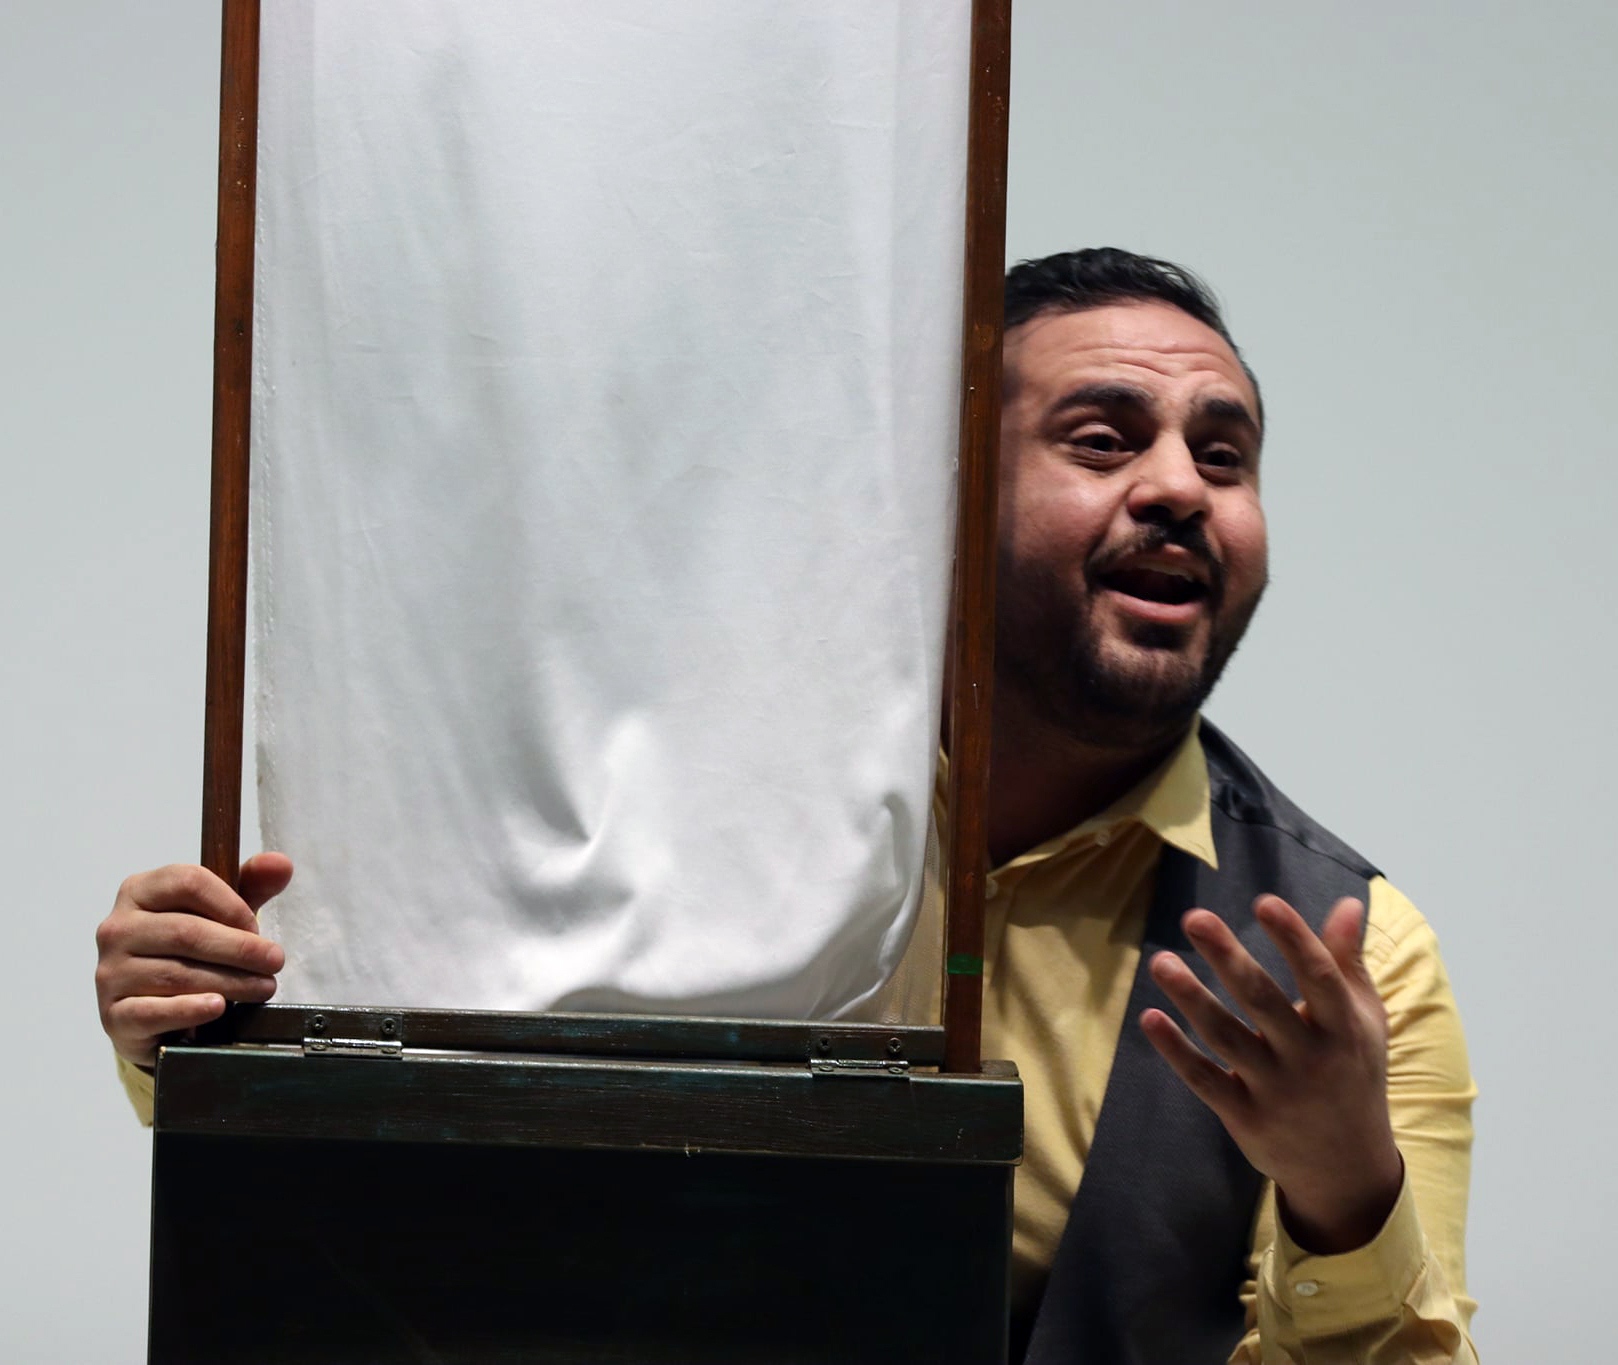 الجامعة تعرض مسرحية بعنوان "على الدوار" للفنان الفلسطيني علاء شحادة